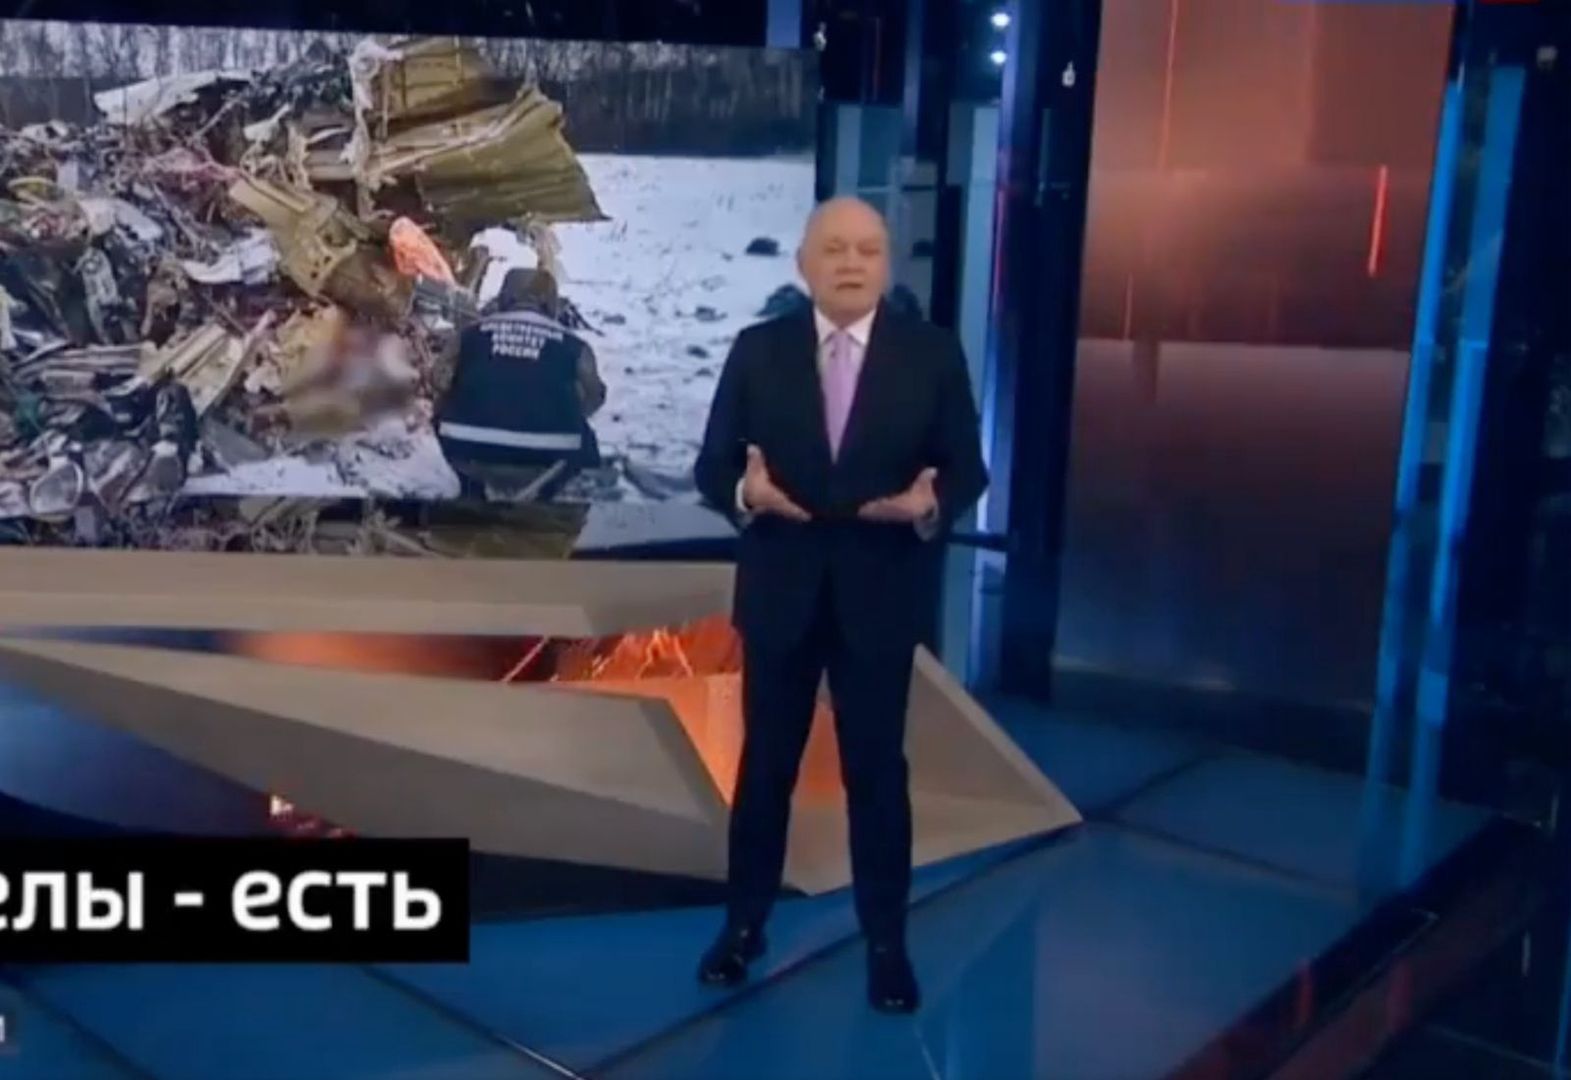 Rosyjska propaganda straszy atakiem na Rzeszów. "Możemy zrobić to z łatwością"